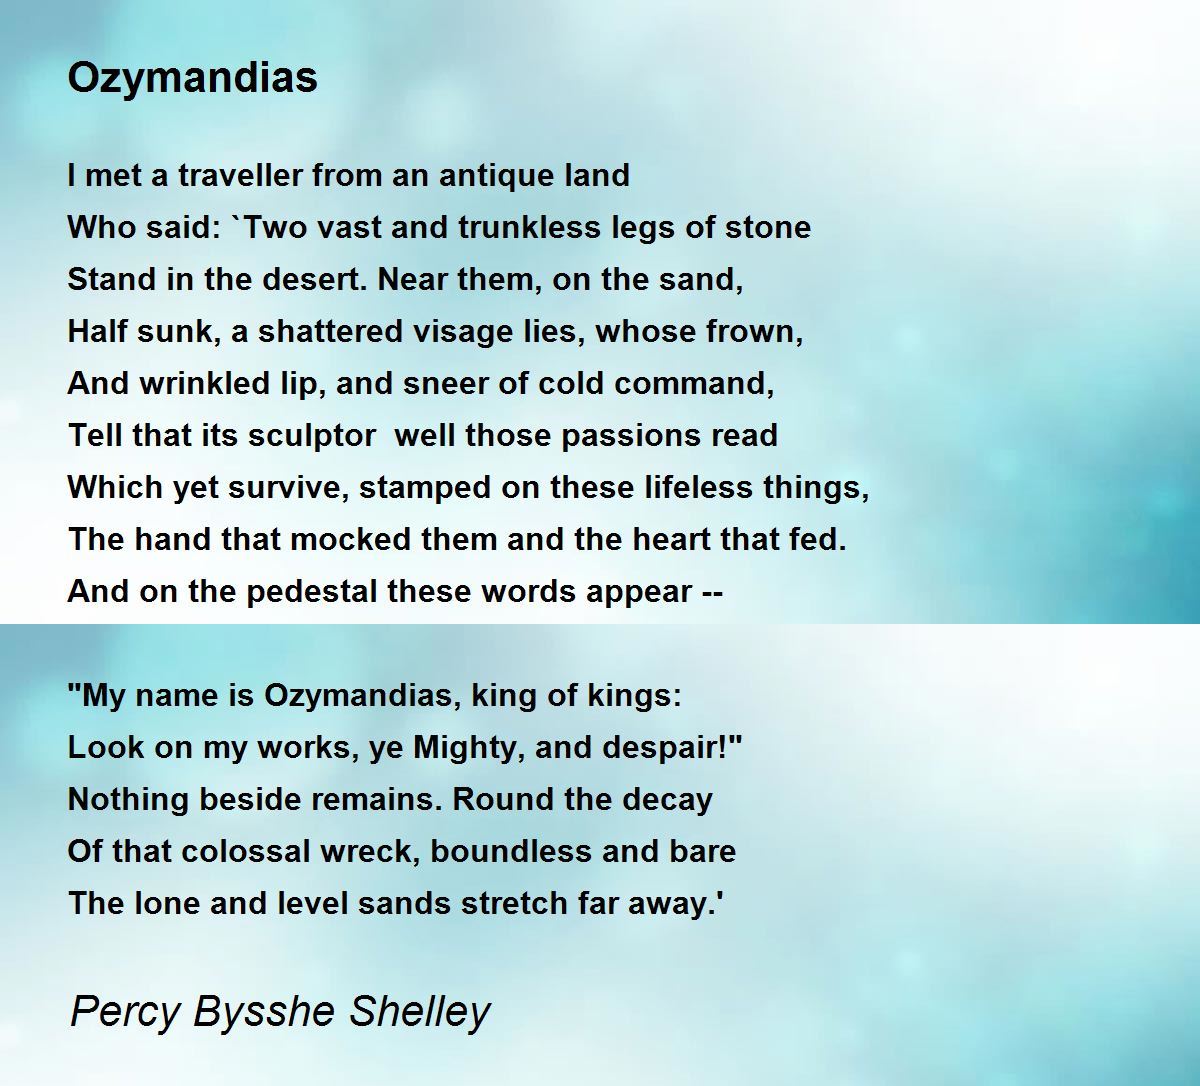 poems similar to ozymandias